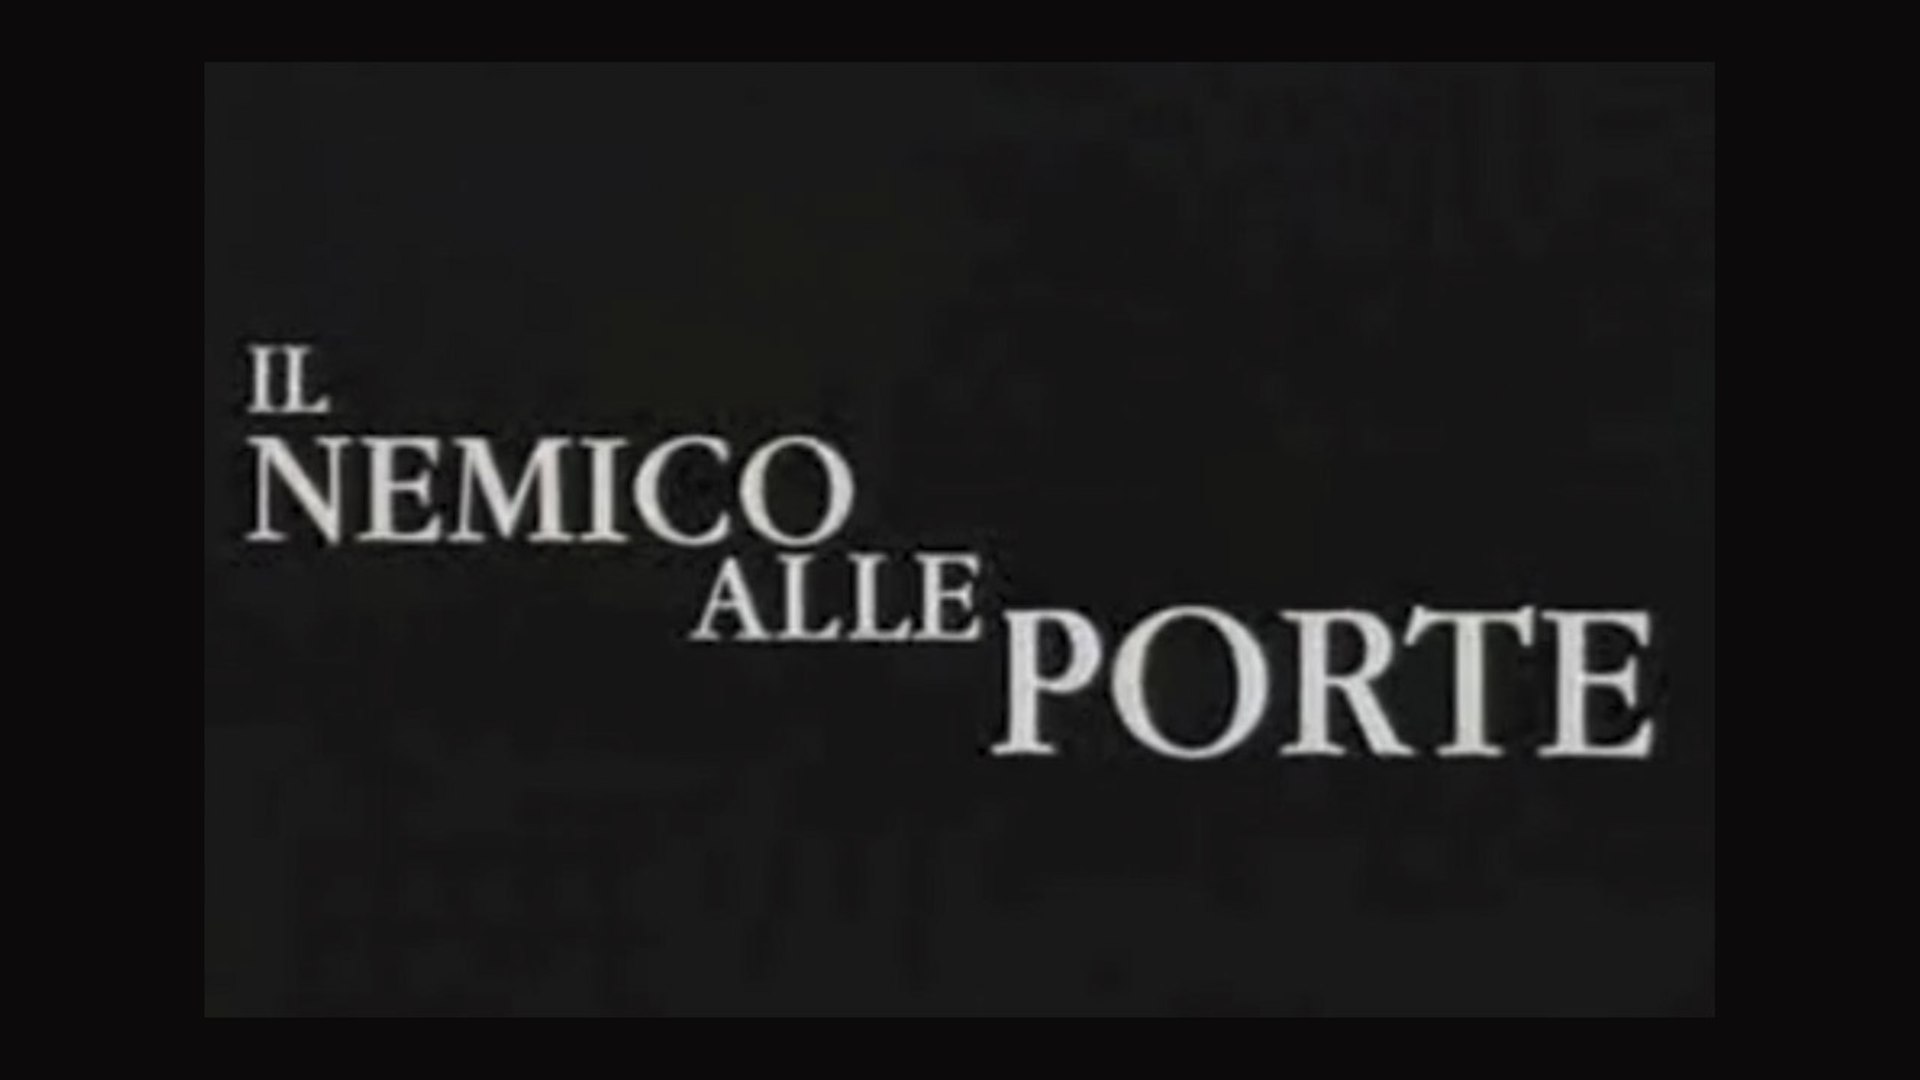 Il nemico alle porte (2001) gratis italiano (HD720p) - Video Dailymotion